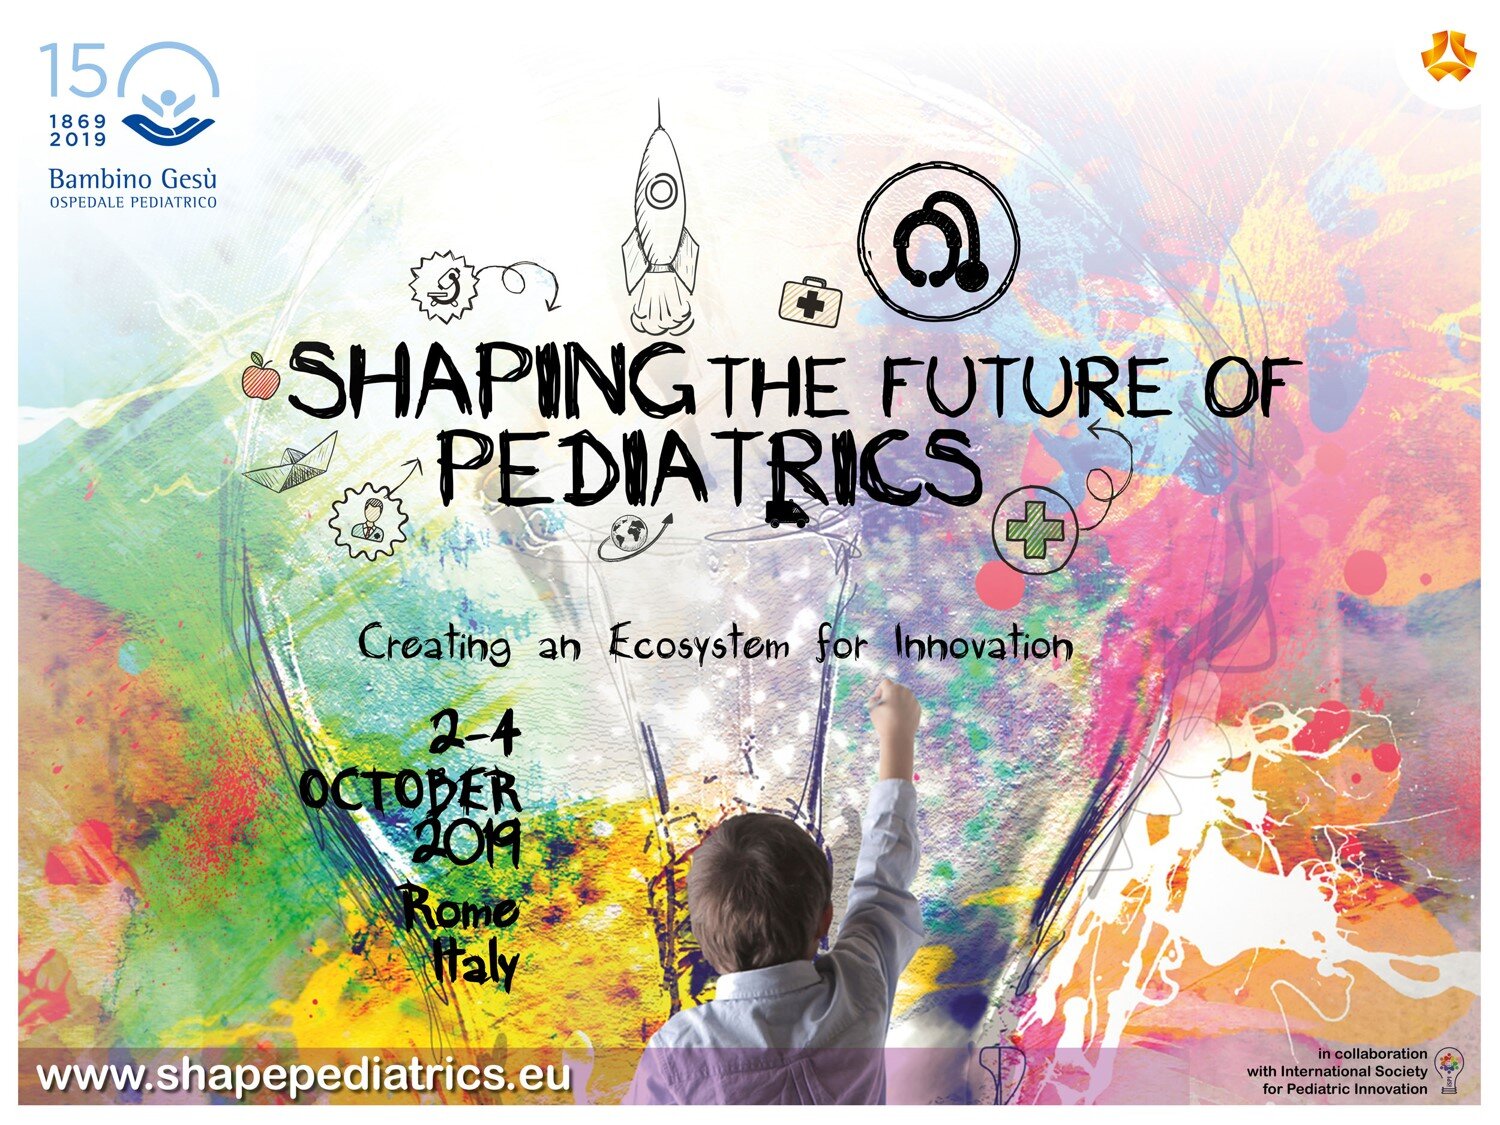 Premio Bambino Gesù innovazione in pediatria